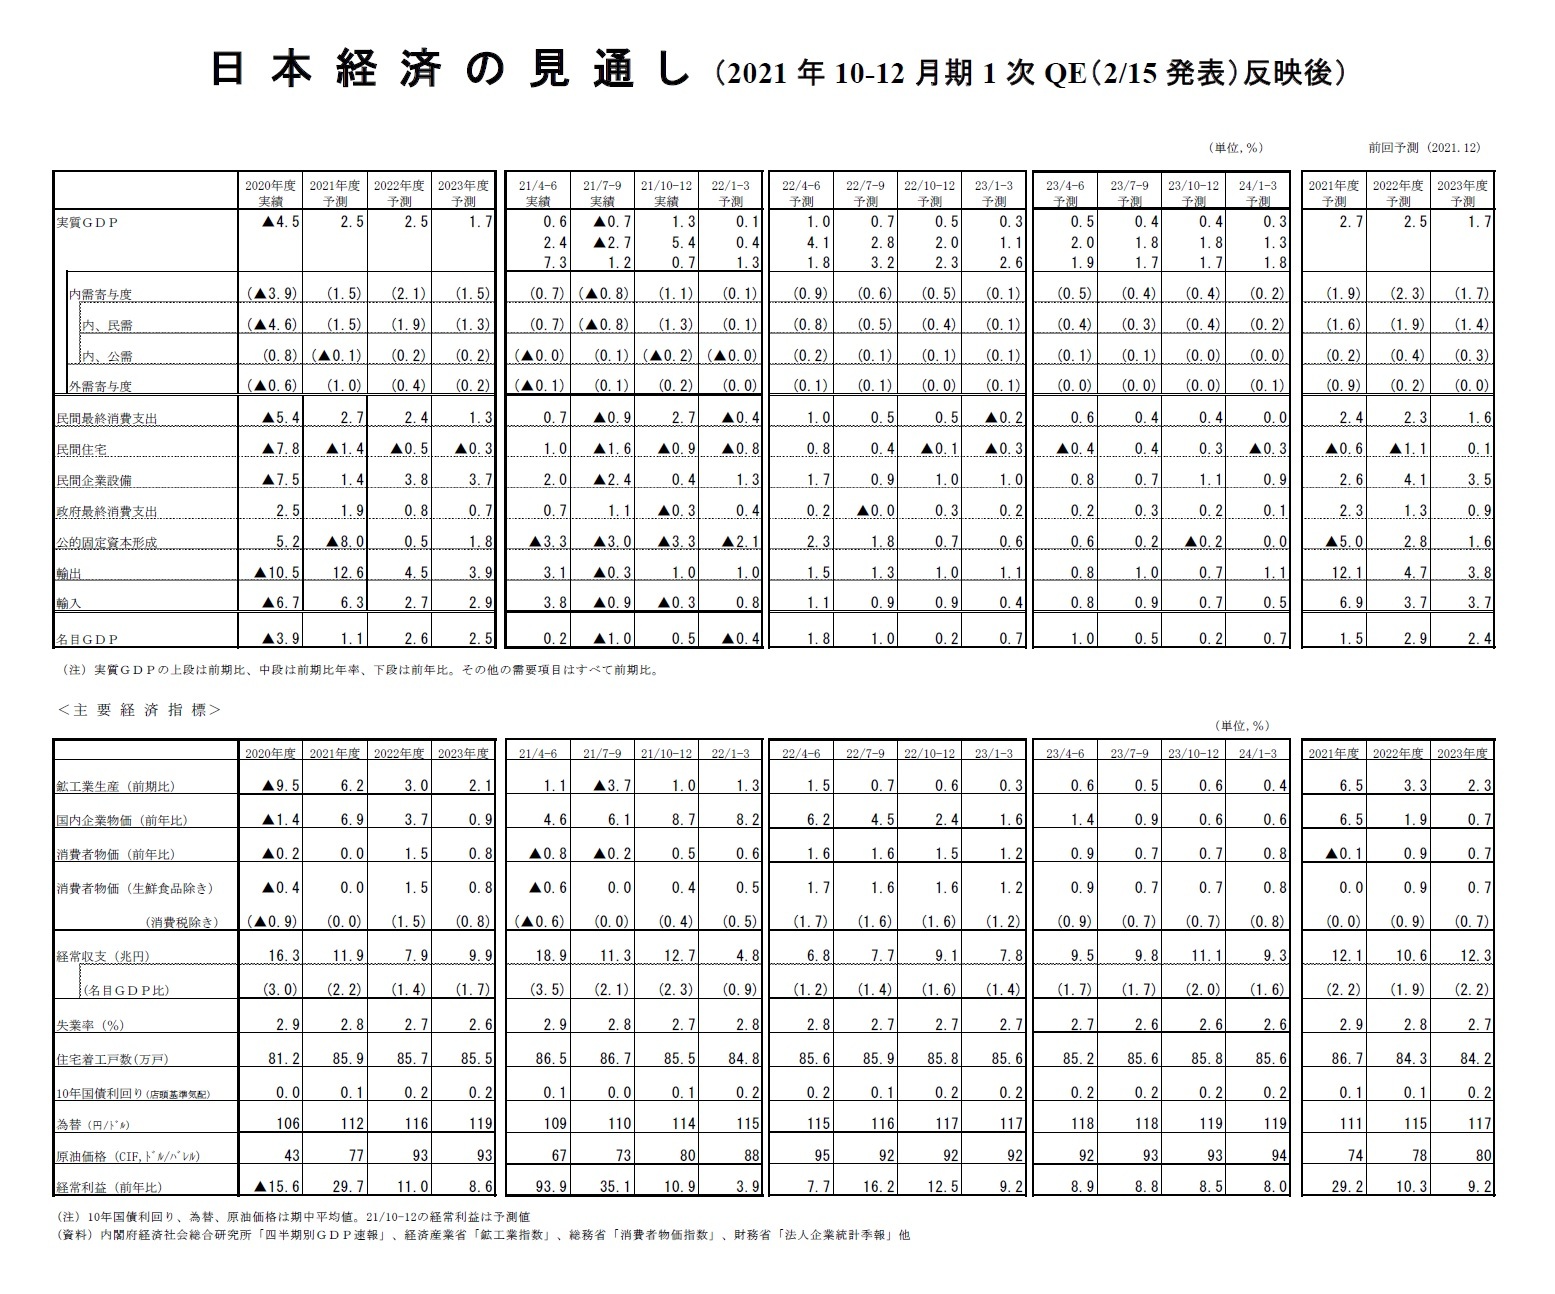 日本経済の見通し（2021年10-12月期1次QE（2/15発表）反映後）